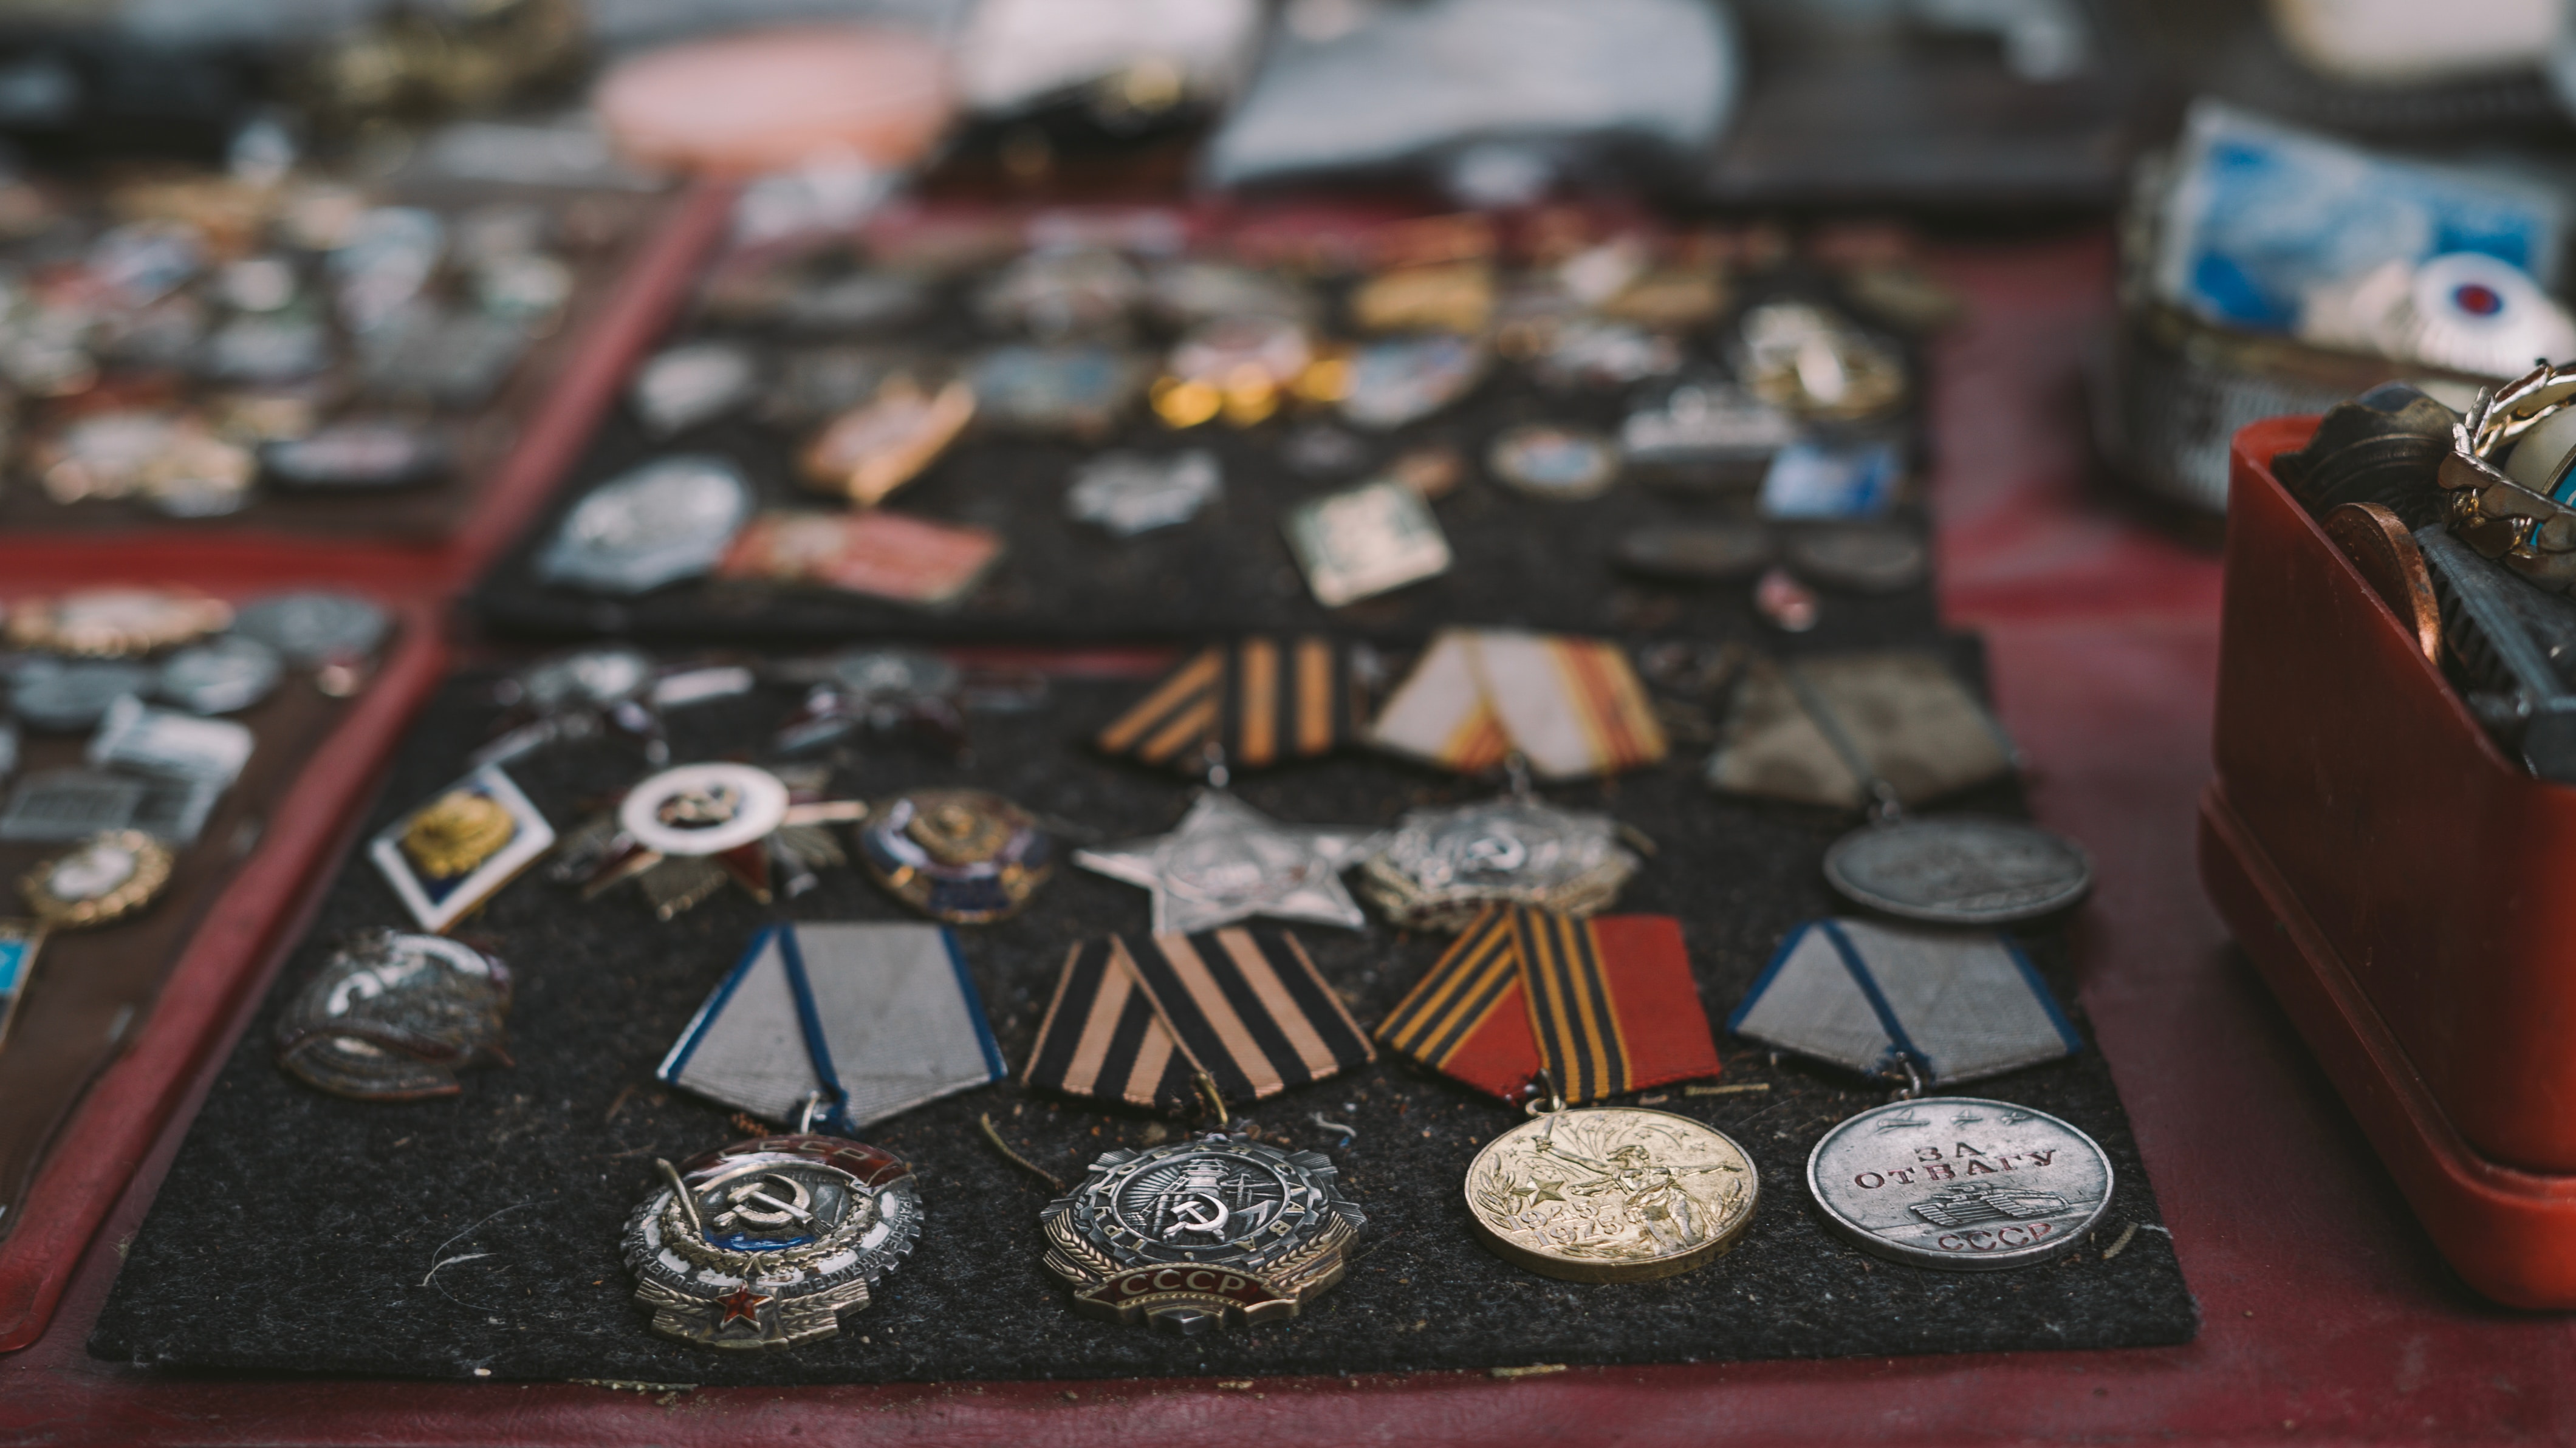 Intelegerea simbolismului si heraldicii din designul insignelor, medaliilor si ordinelor militare